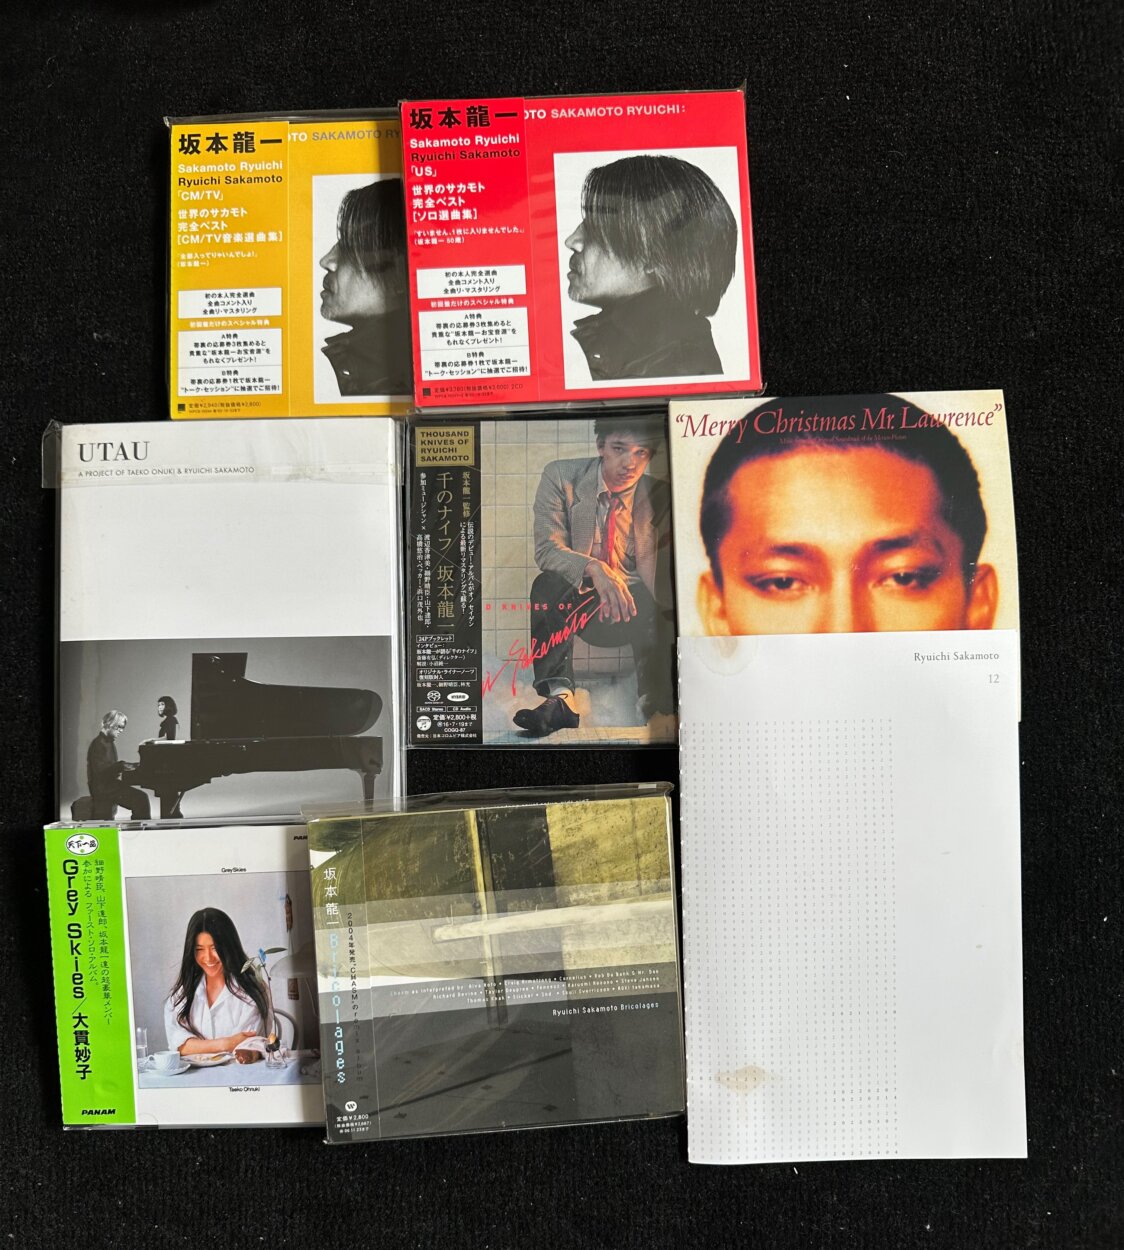 坂本龍一の名盤の数々と、坂本龍一もアレンジで参加した大貫妙子のデビュー・アルバム『Grey Skies』（1976年）、坂本龍一と大貫妙子が共同制作したアルバム『UTAU』（2010年）